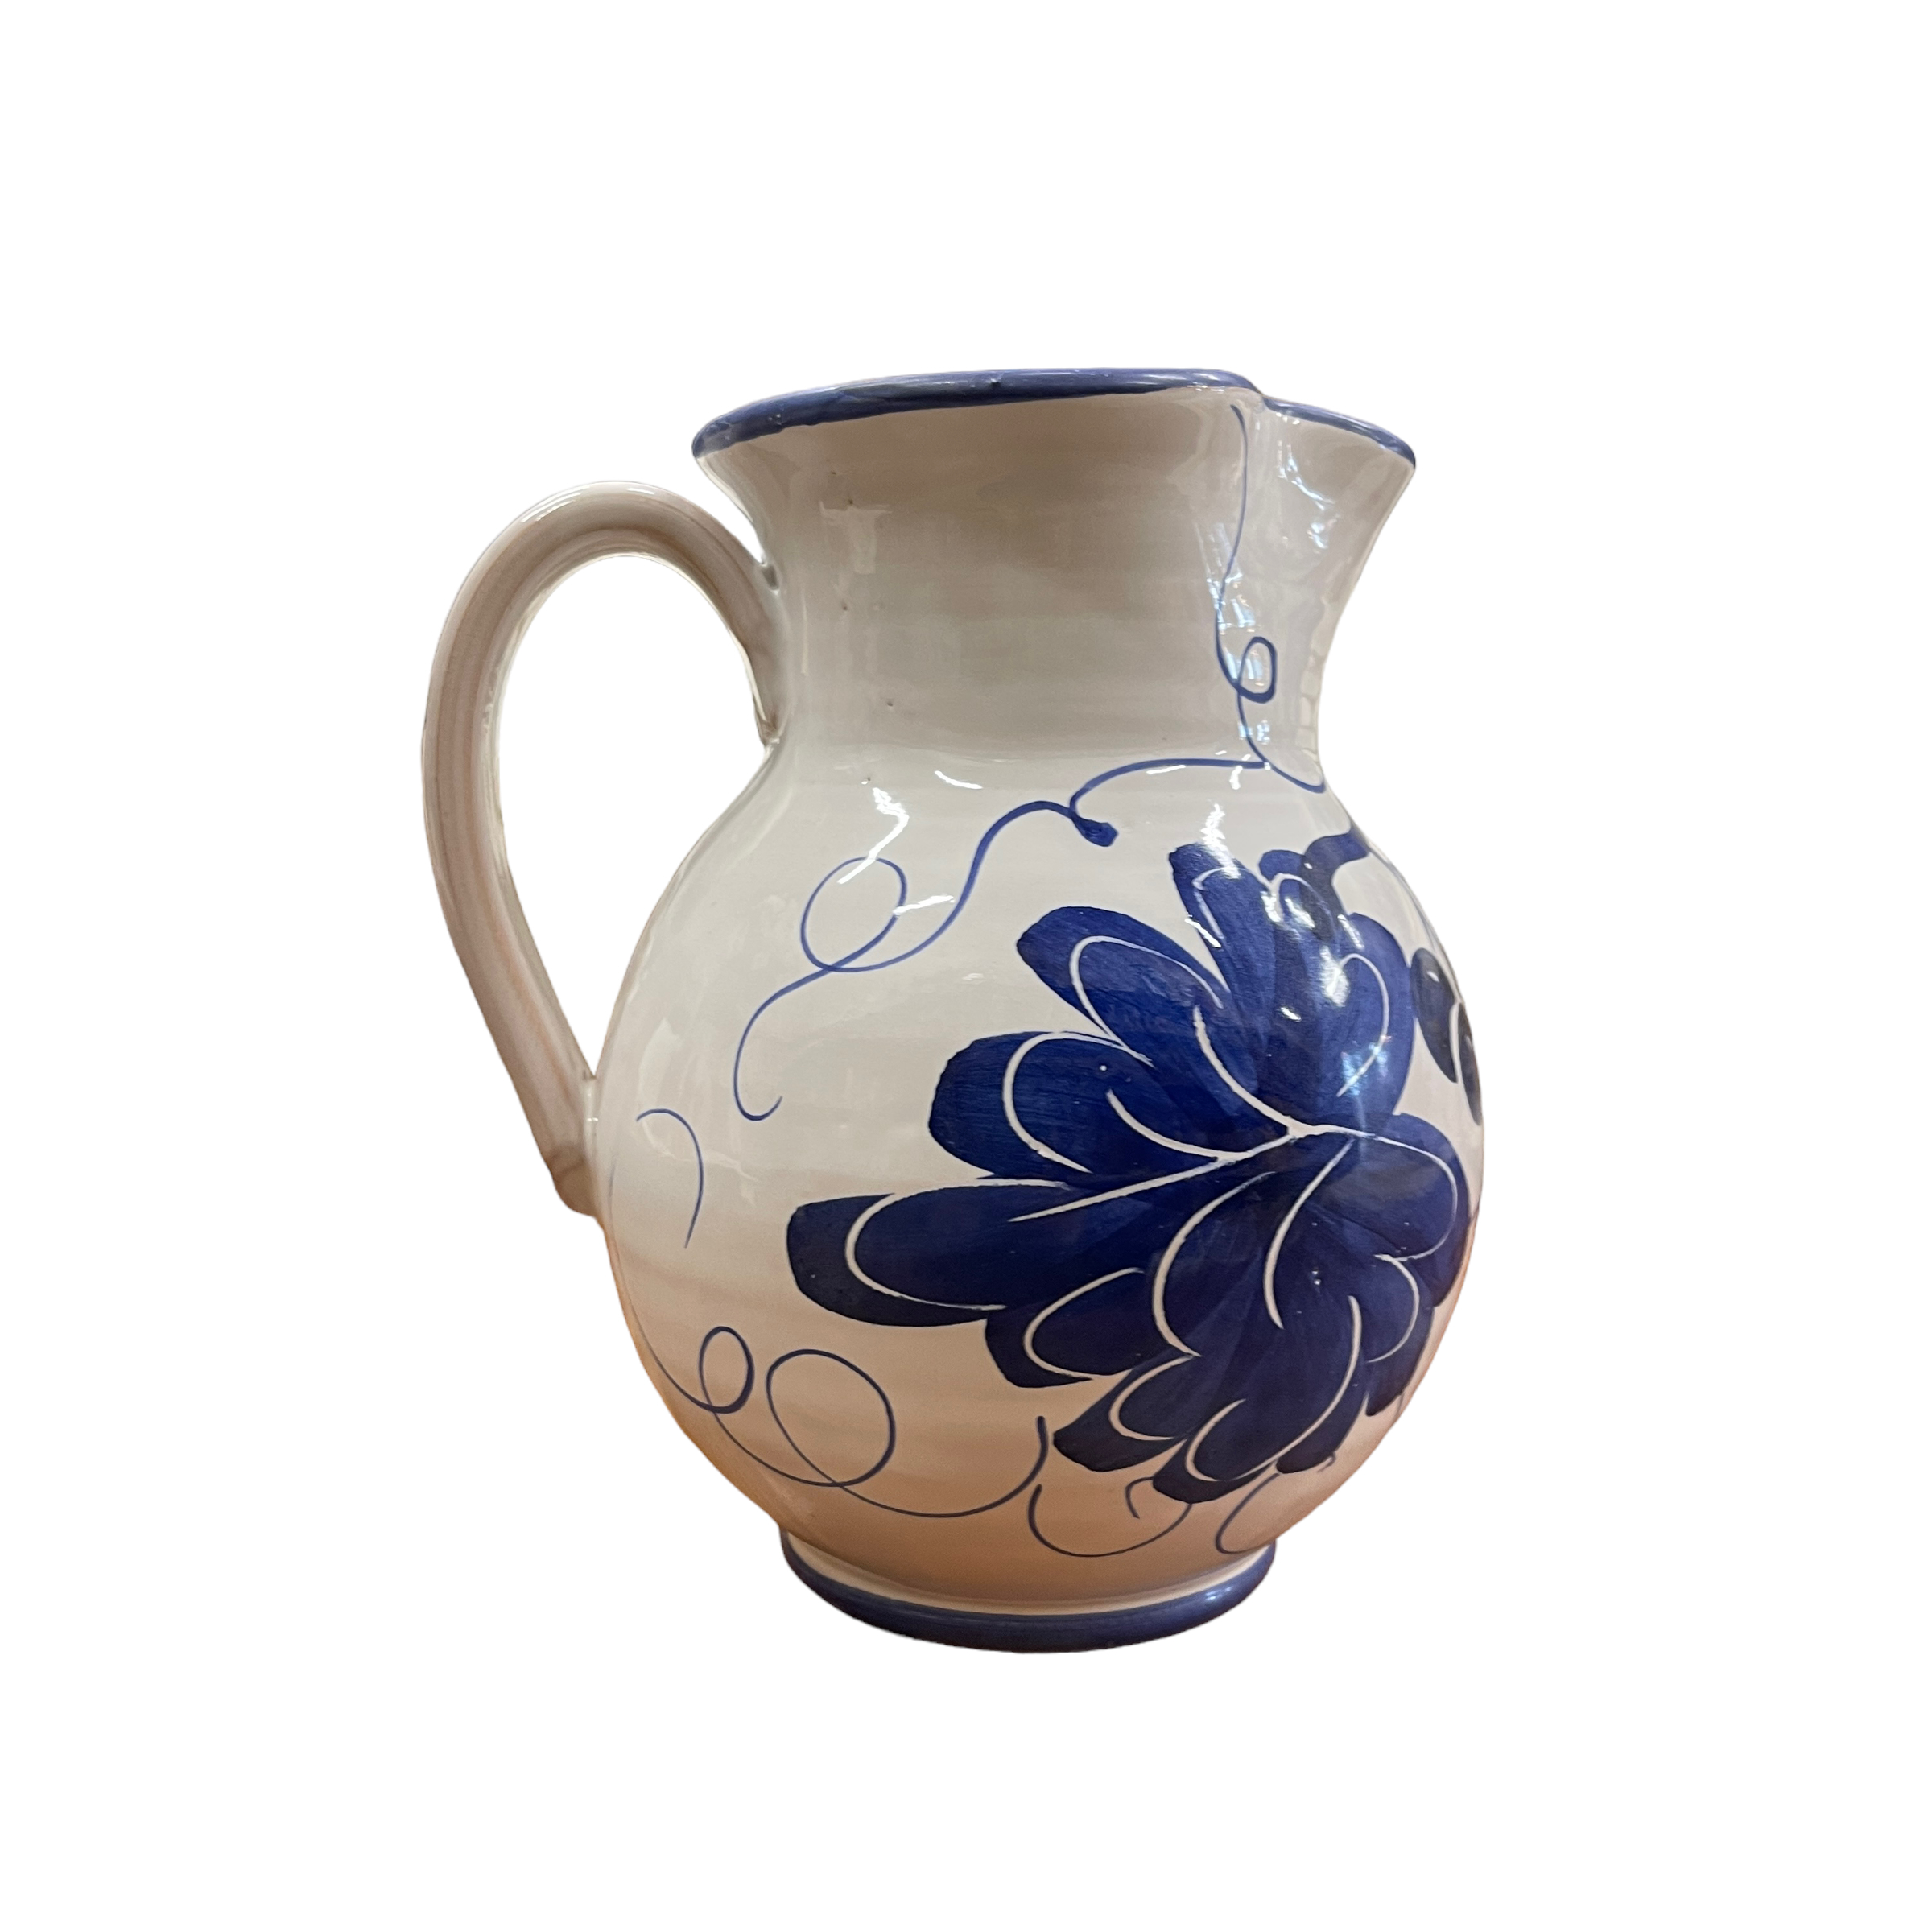 Brocca in Ceramica fatta e dipinta a mano con manico con disegni romagnoli blu capacità 1,5 Litri